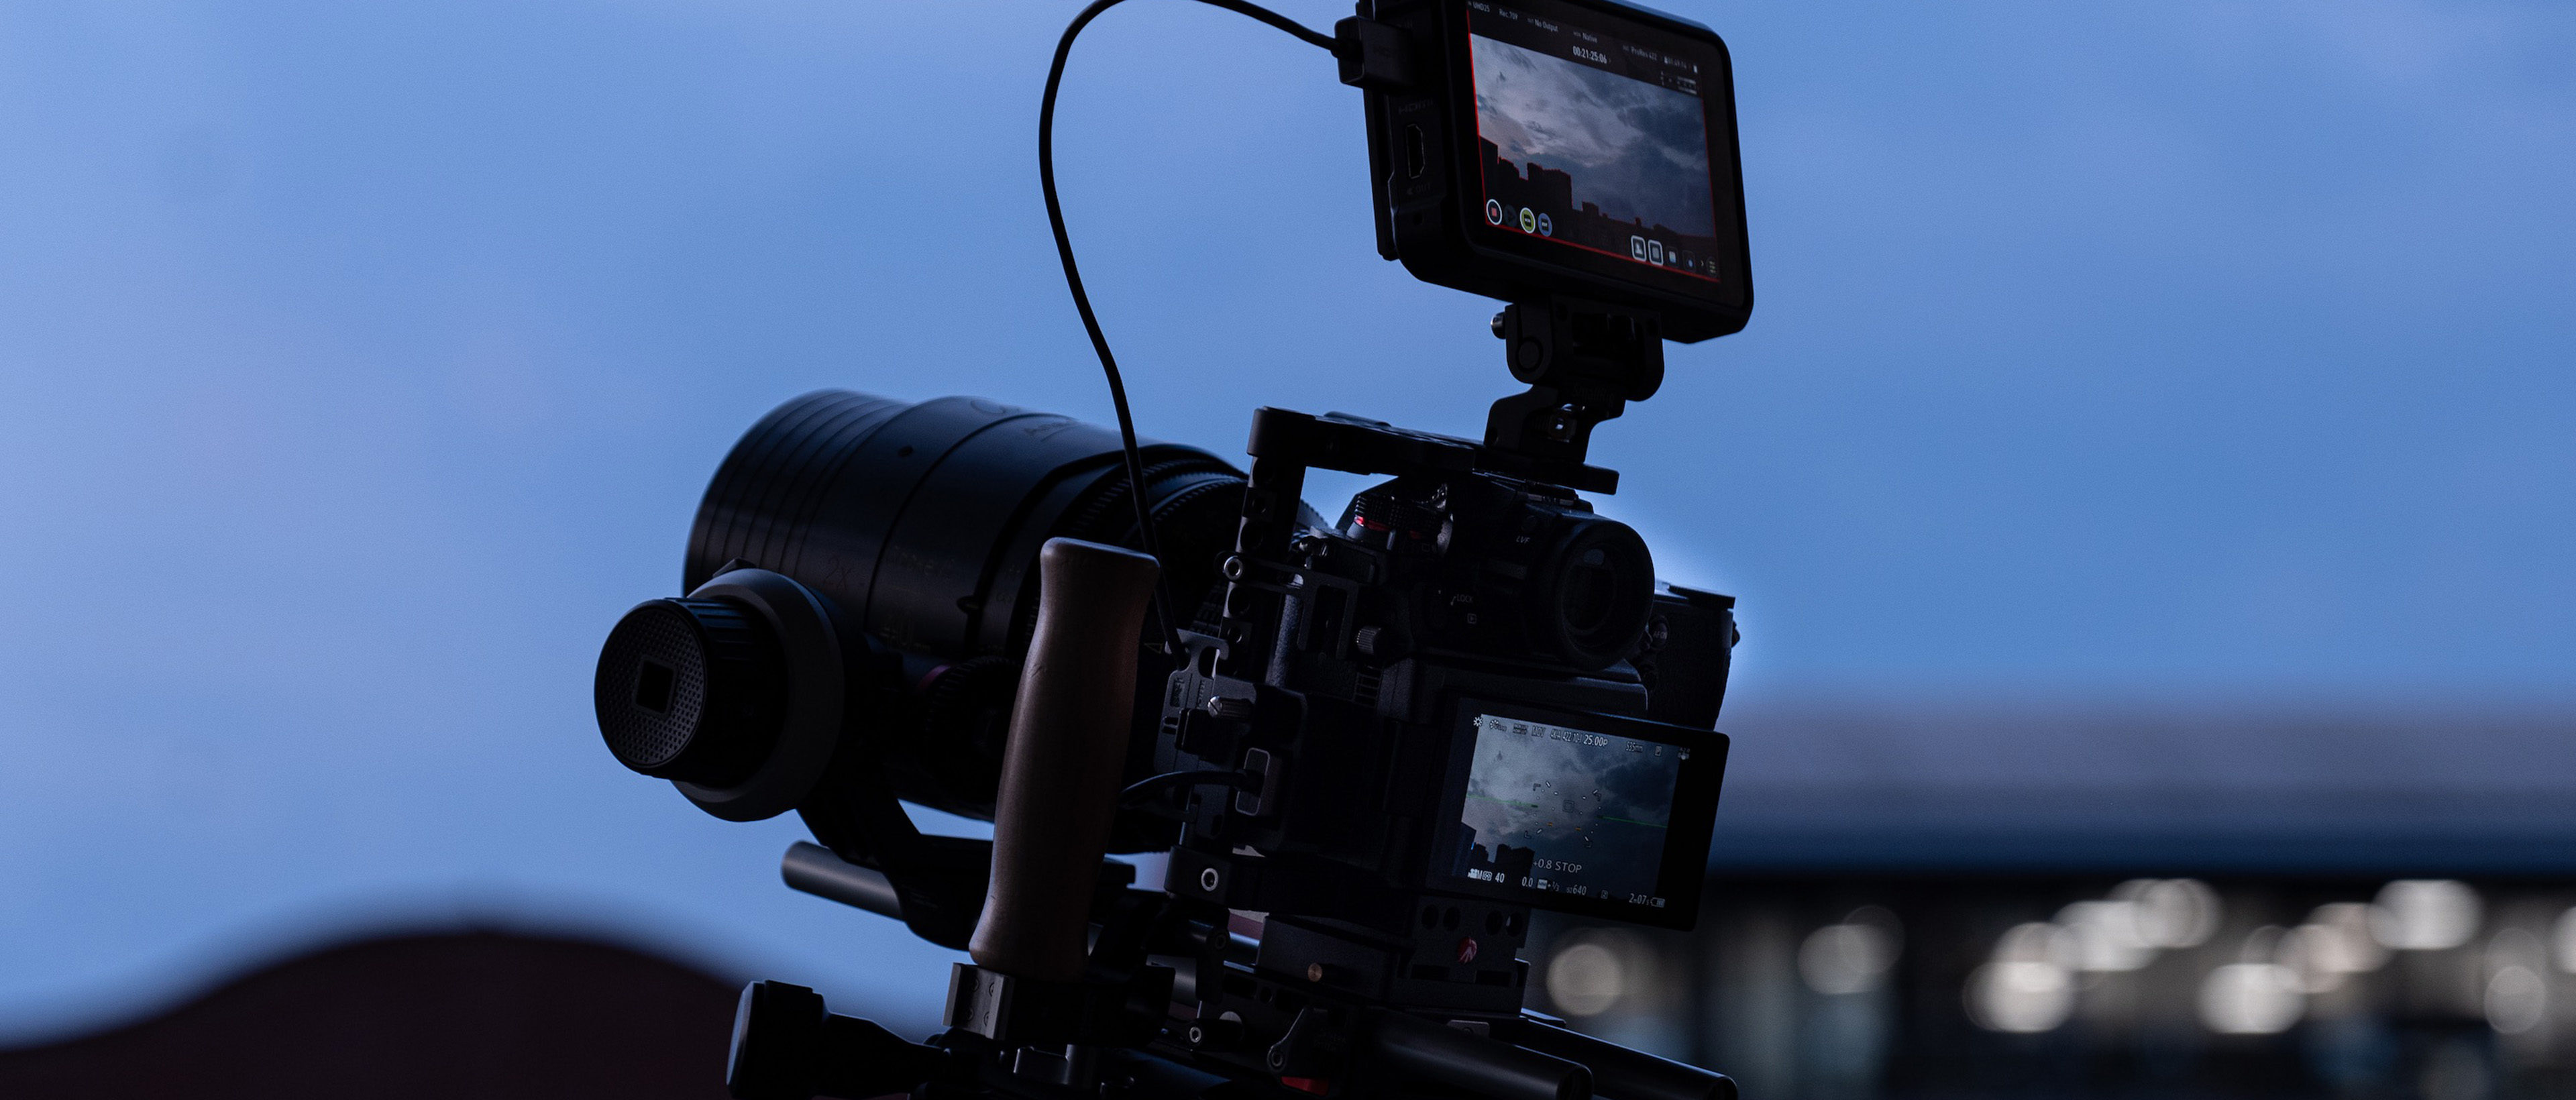 Preview Image: Drei Systemkameras für anspruchsvolle Filmer